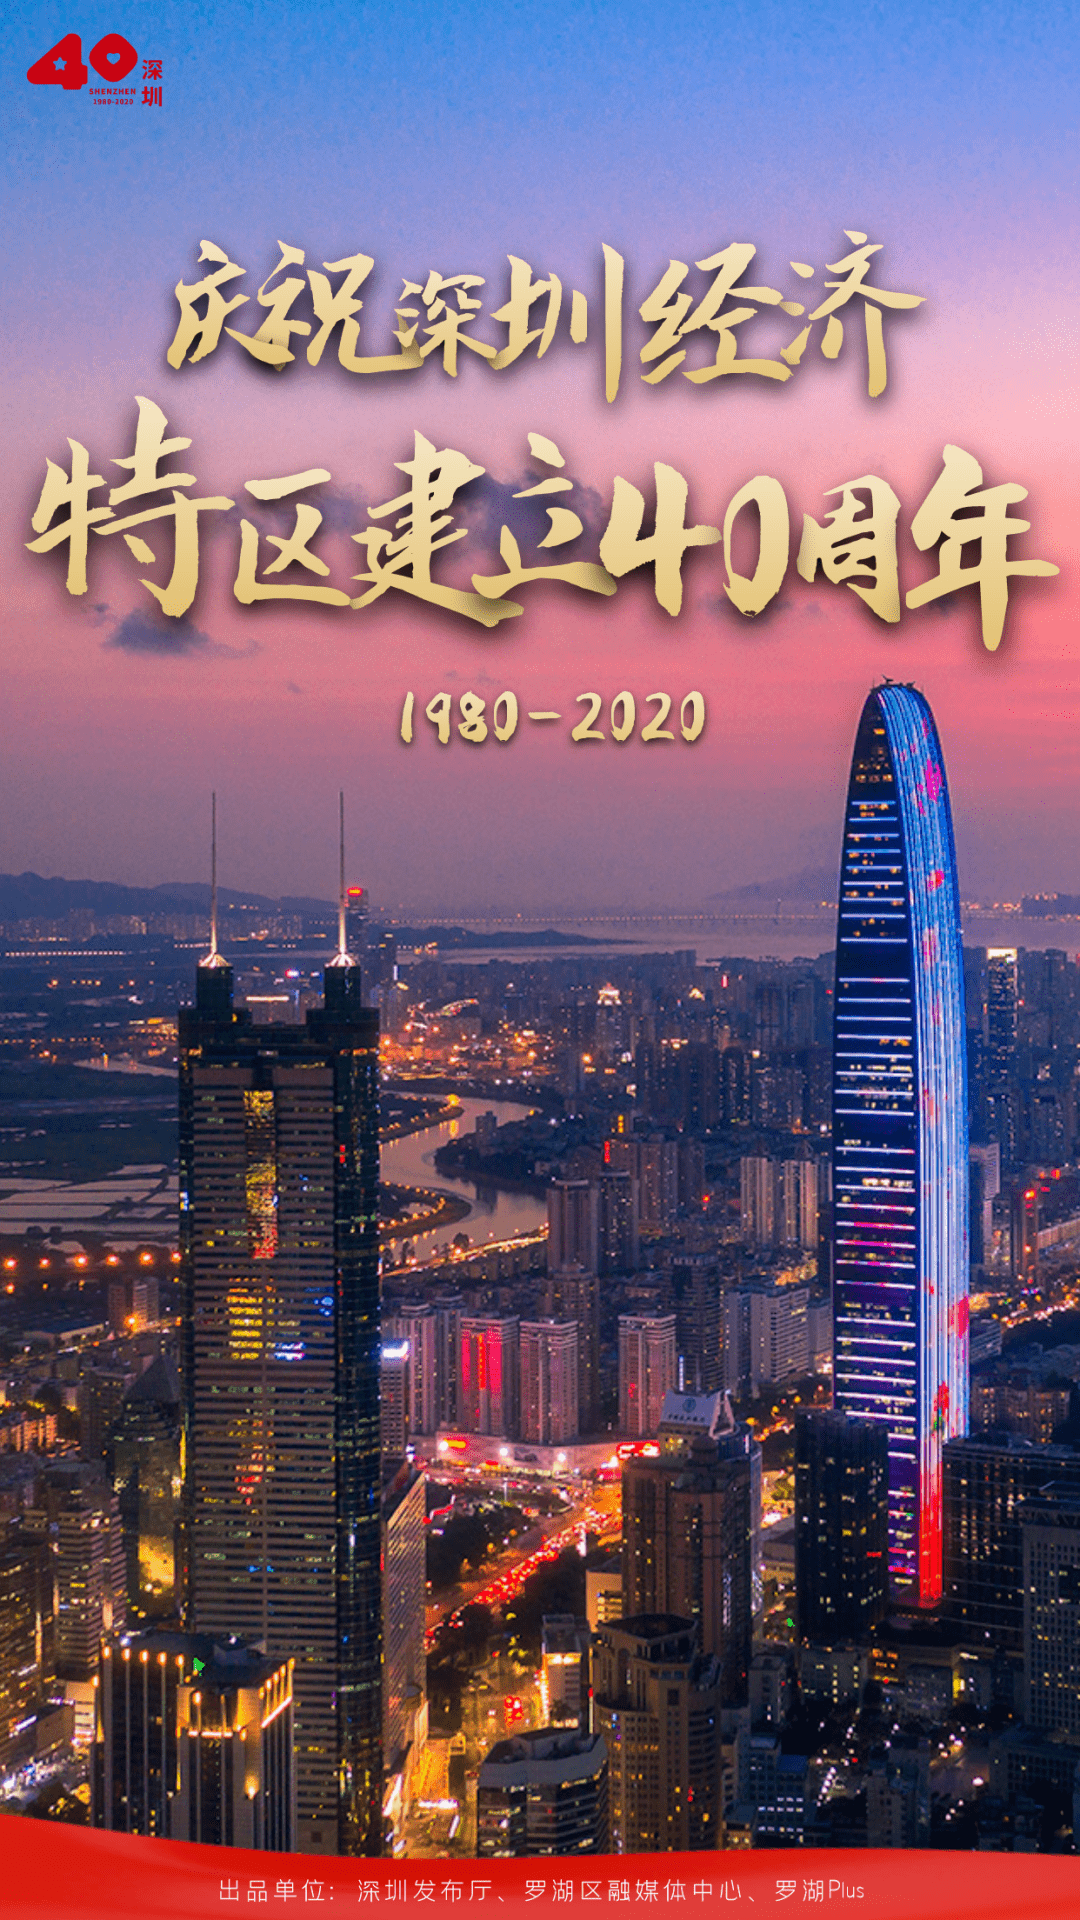 四十年的时间 深圳各区都发生了翻天覆地的变化 值此40周年来临之际